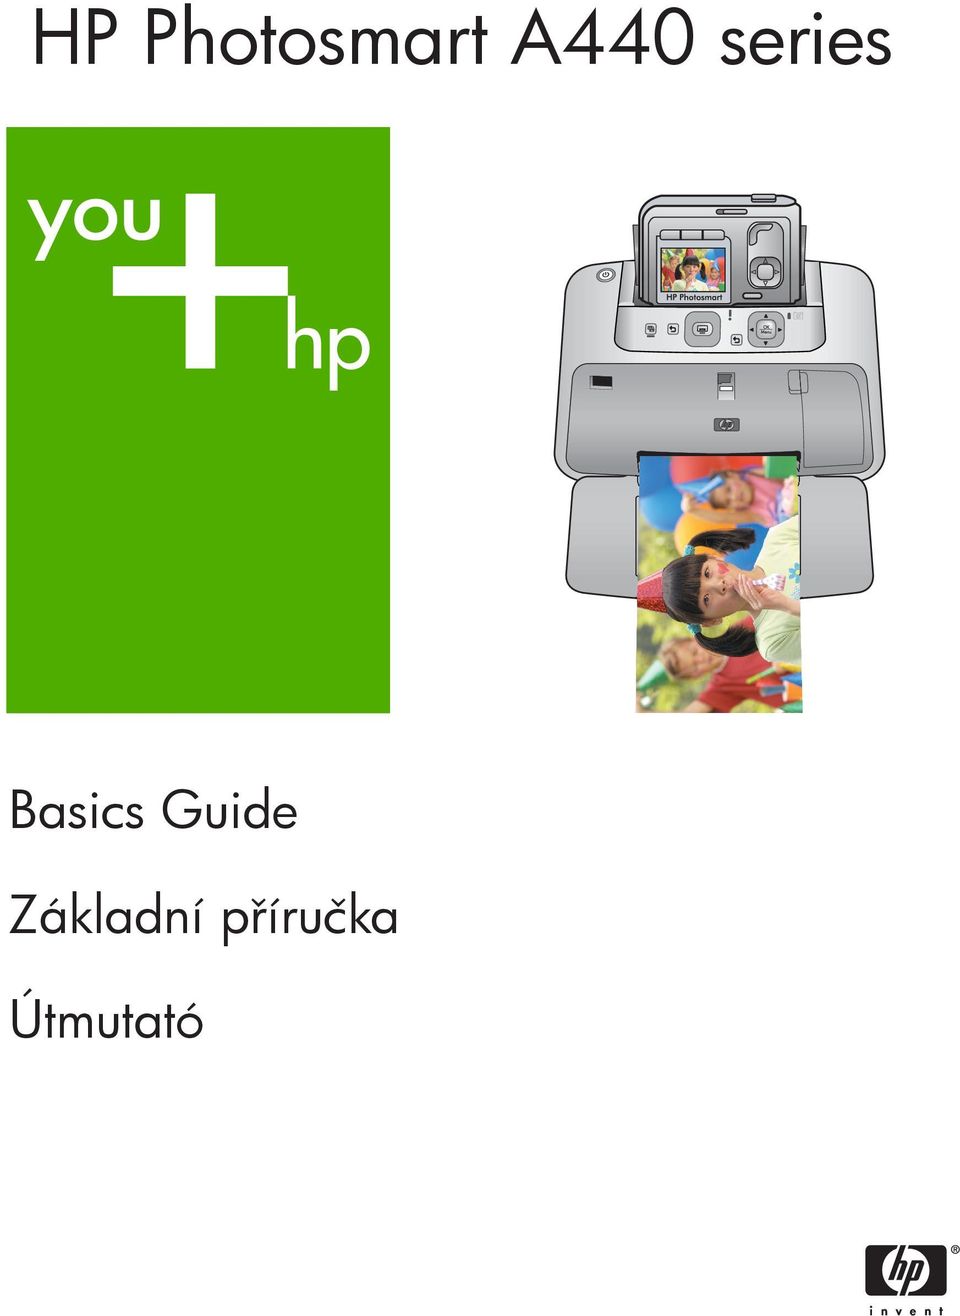 Basics Guide